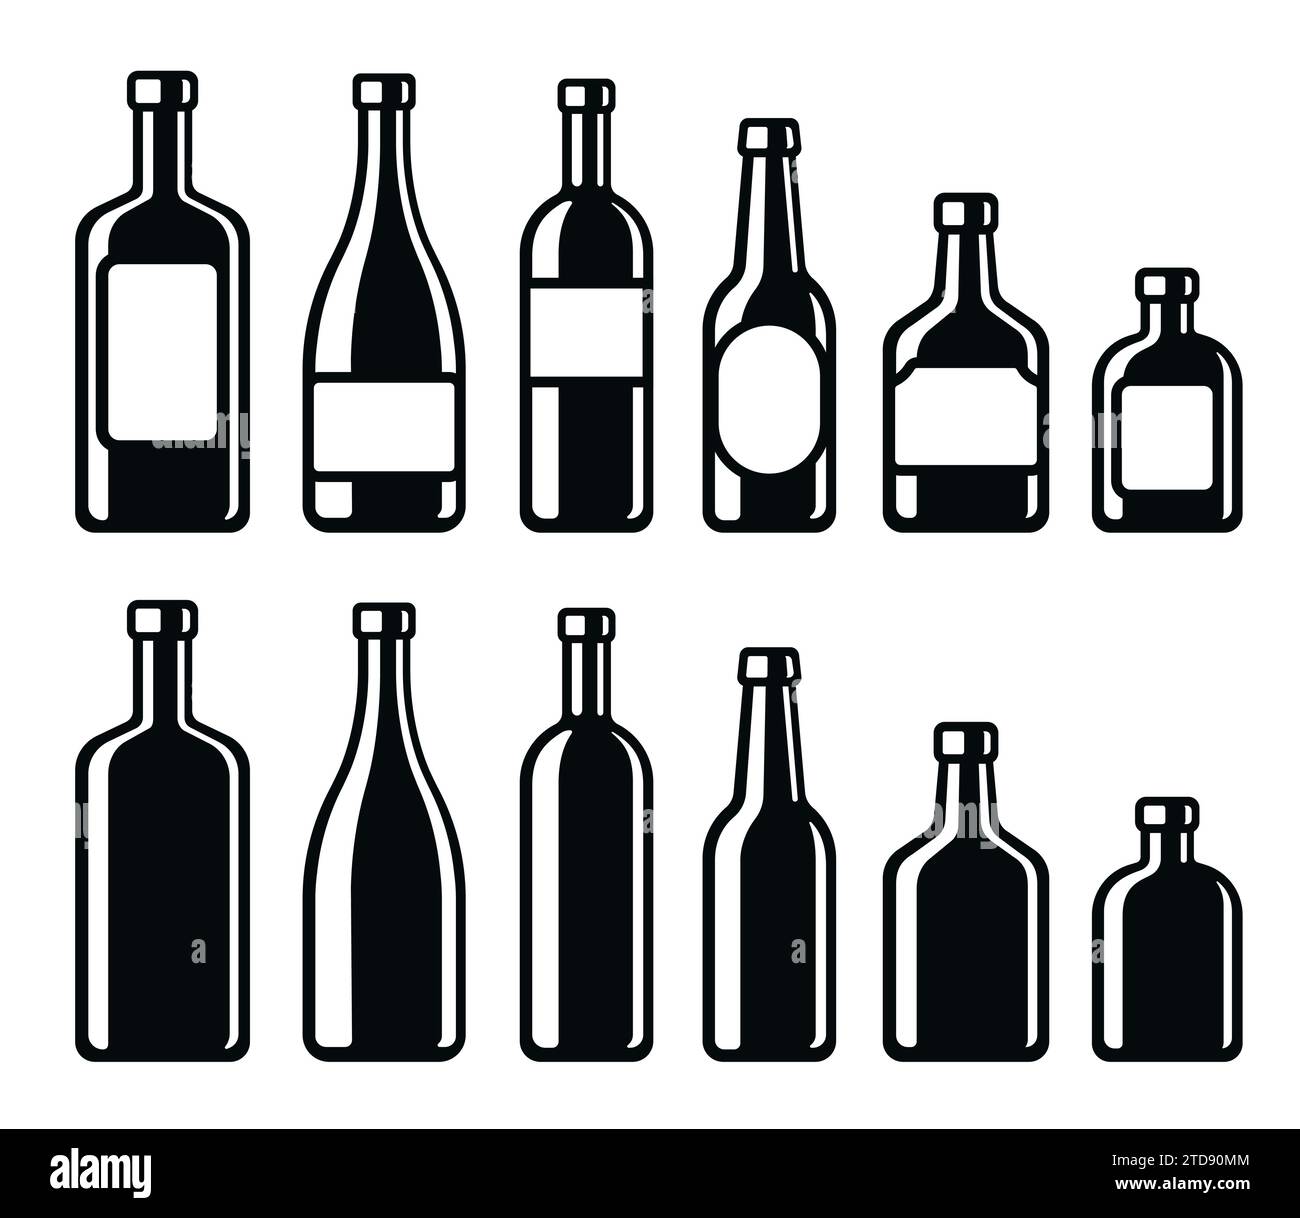 Icone delle bottiglie di bevande alcoliche. Vino, champagne, birra, whisky, liquore duro. Illustrazione vettoriale in bianco e nero semplice ed elegante. Illustrazione Vettoriale